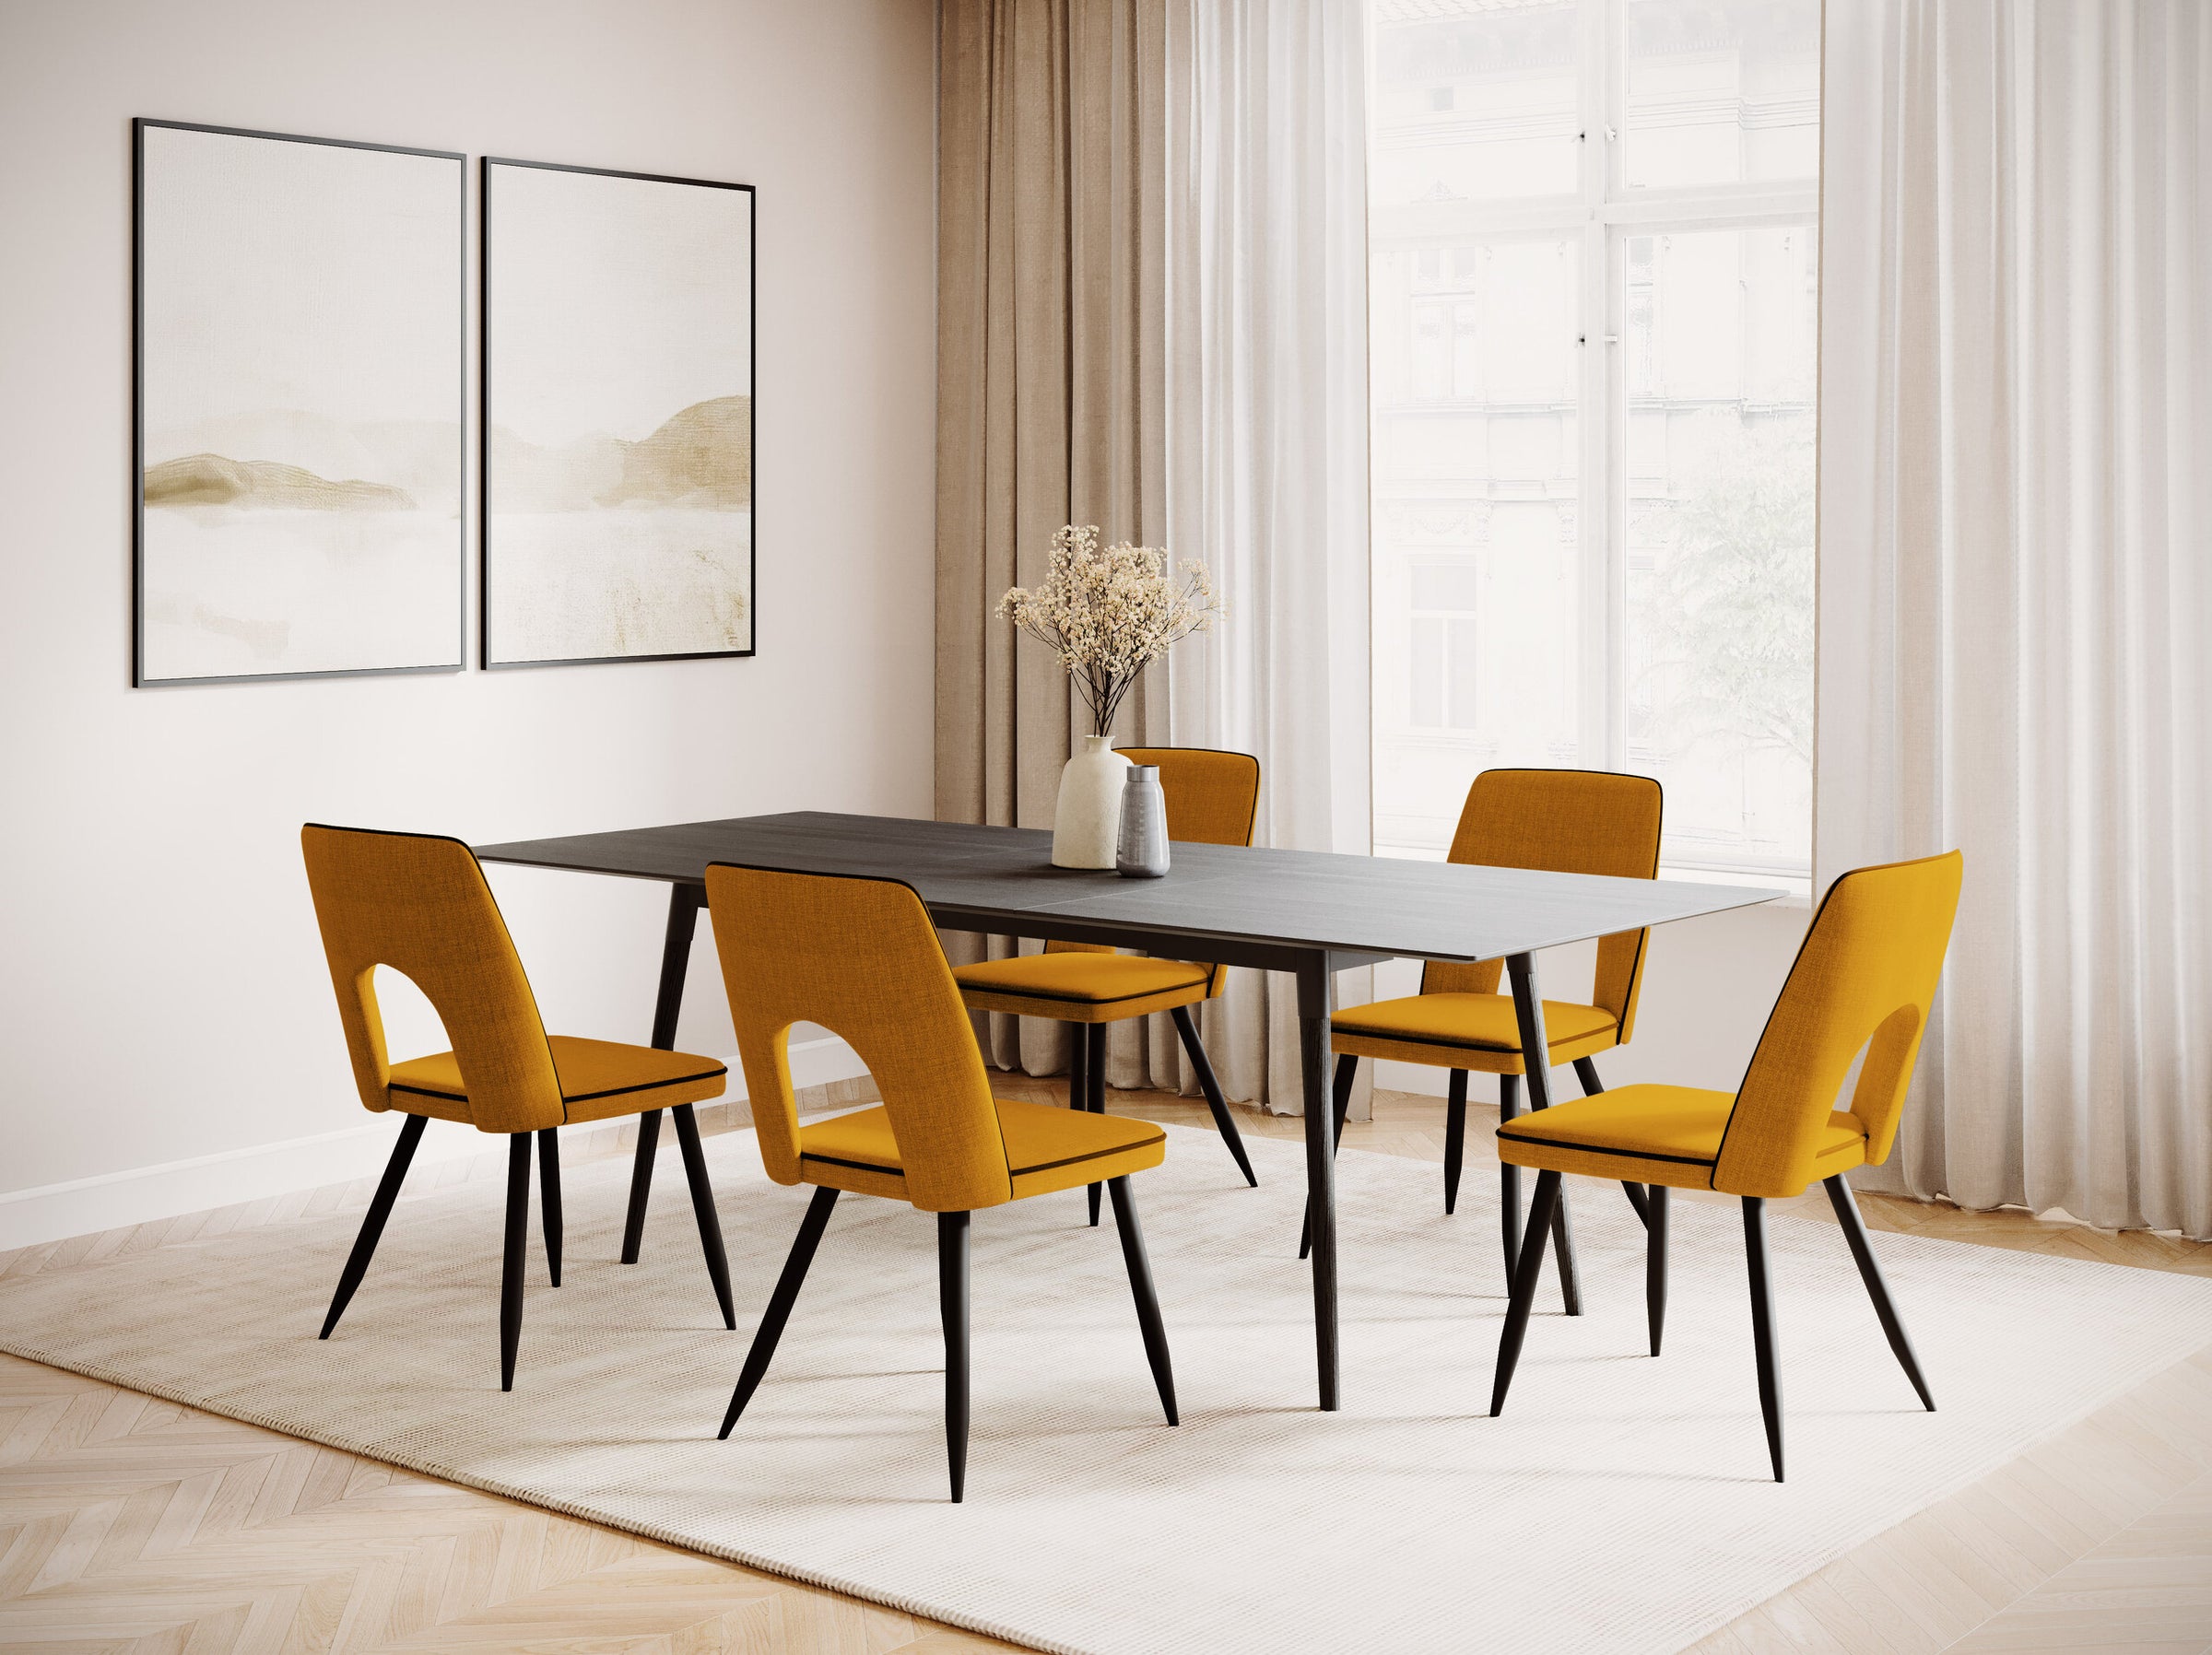 Salar tavoli e sedie legno impiallacciatura di quercia nera